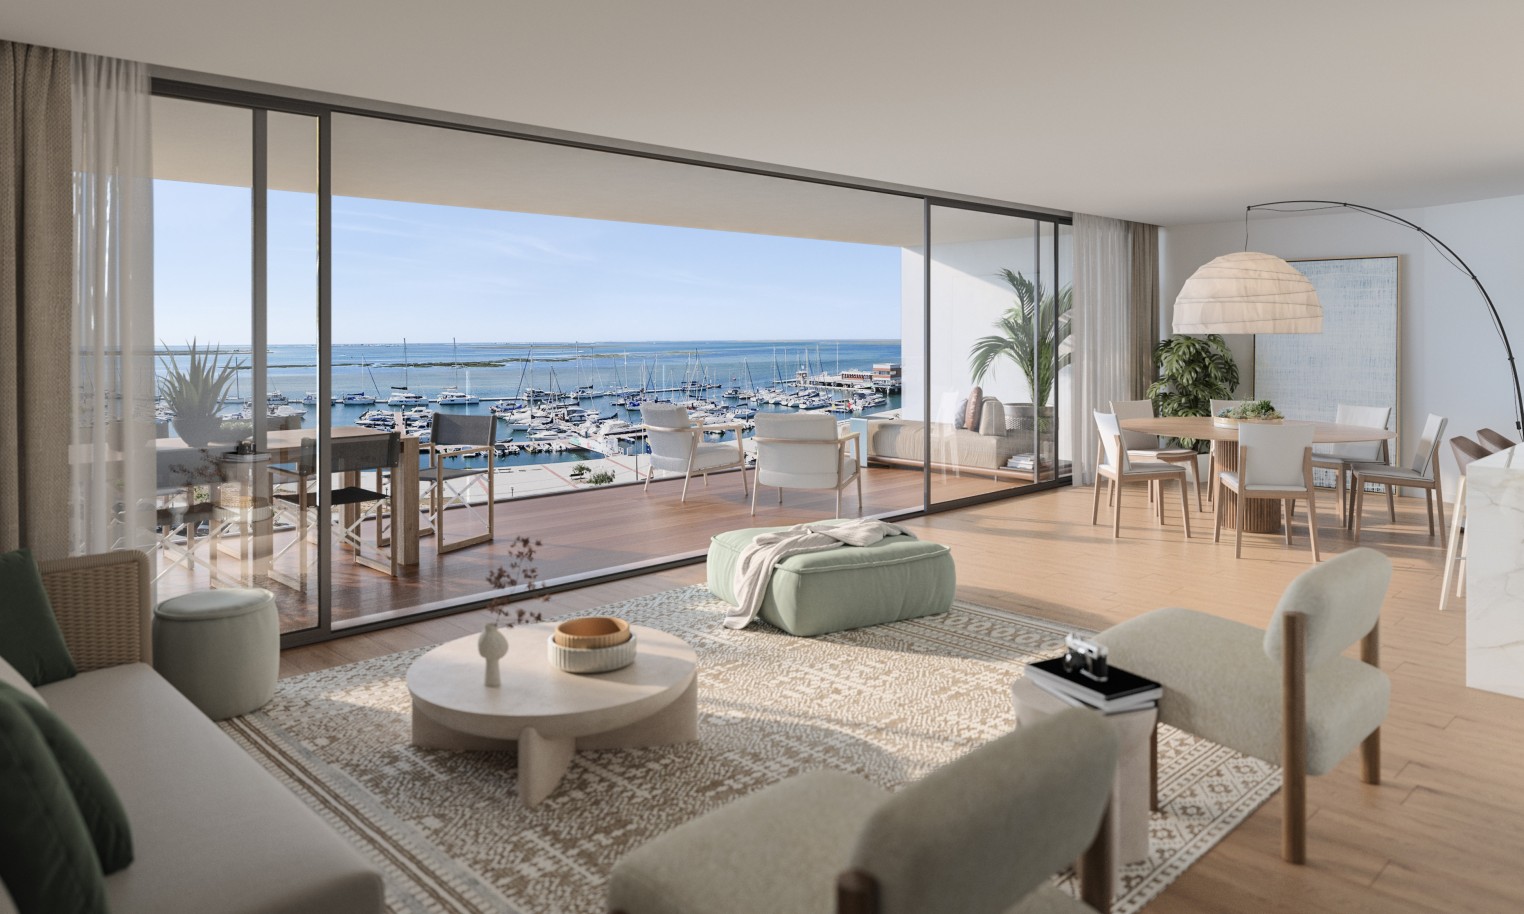 Pisos nuevos con vistas al mar, 1, 2 y 3 dormitorios, en venta en Olhão, Algarve_244657